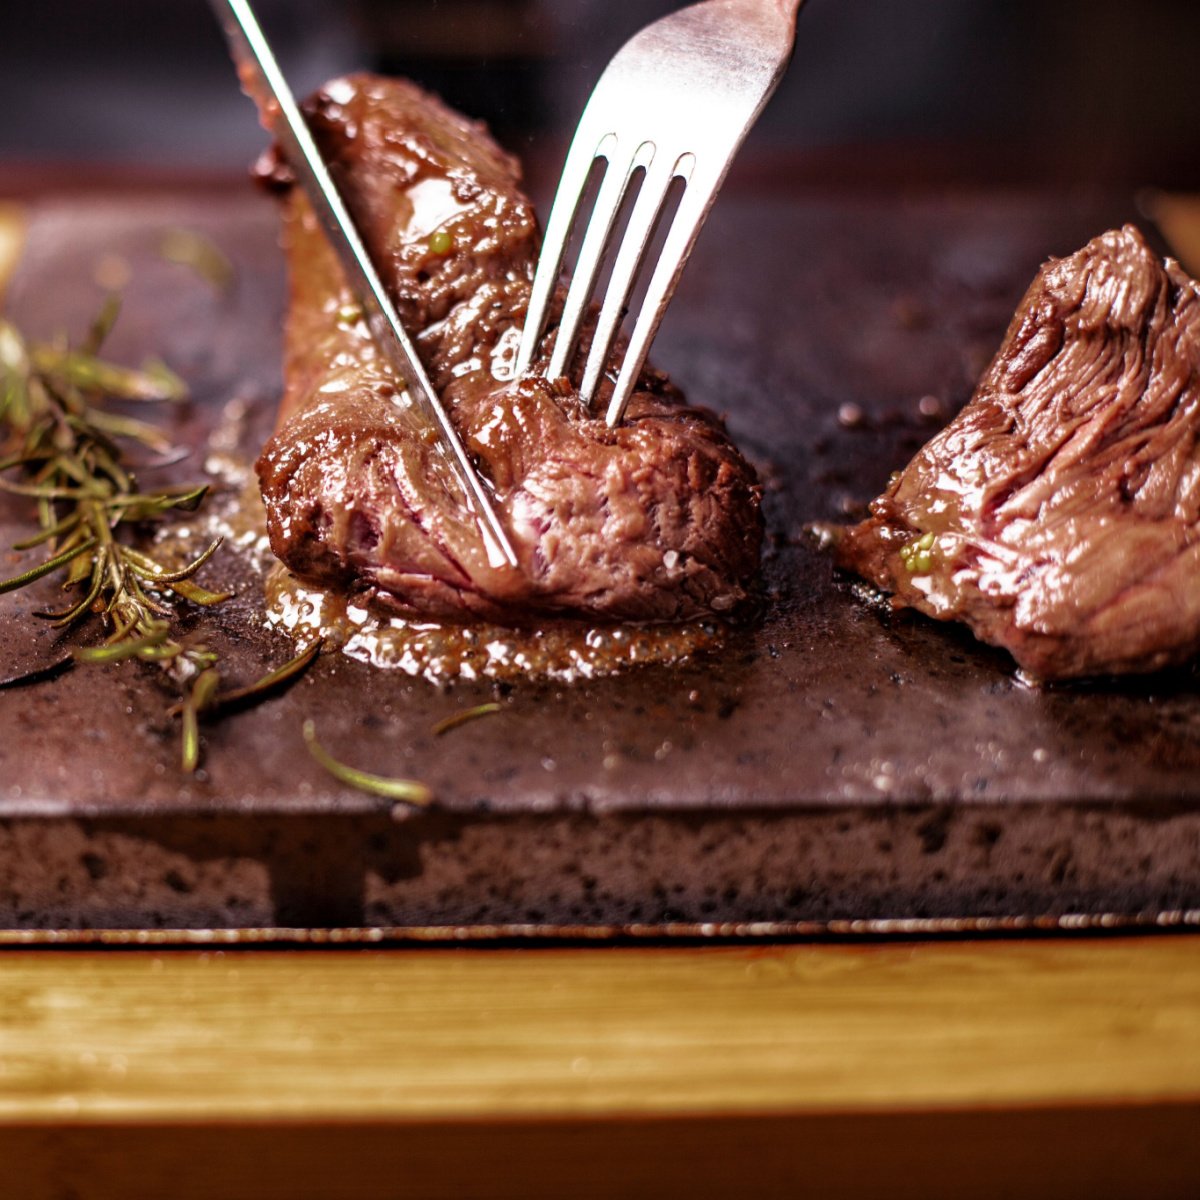 cutting through sirloin steak